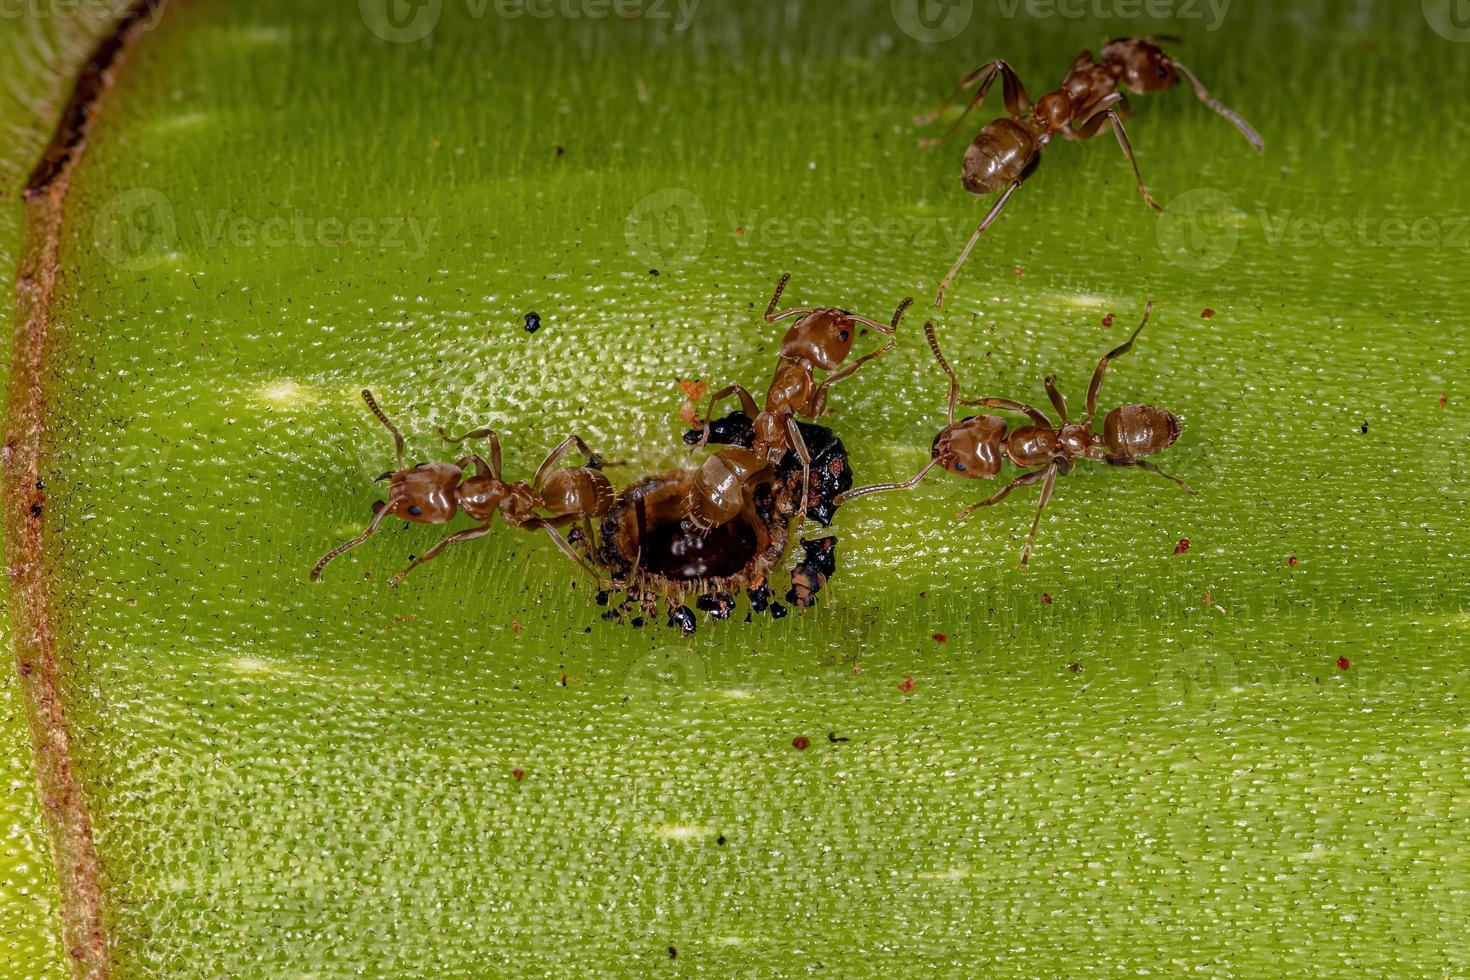 vuxna cecropia myror på en cecropia stam foto